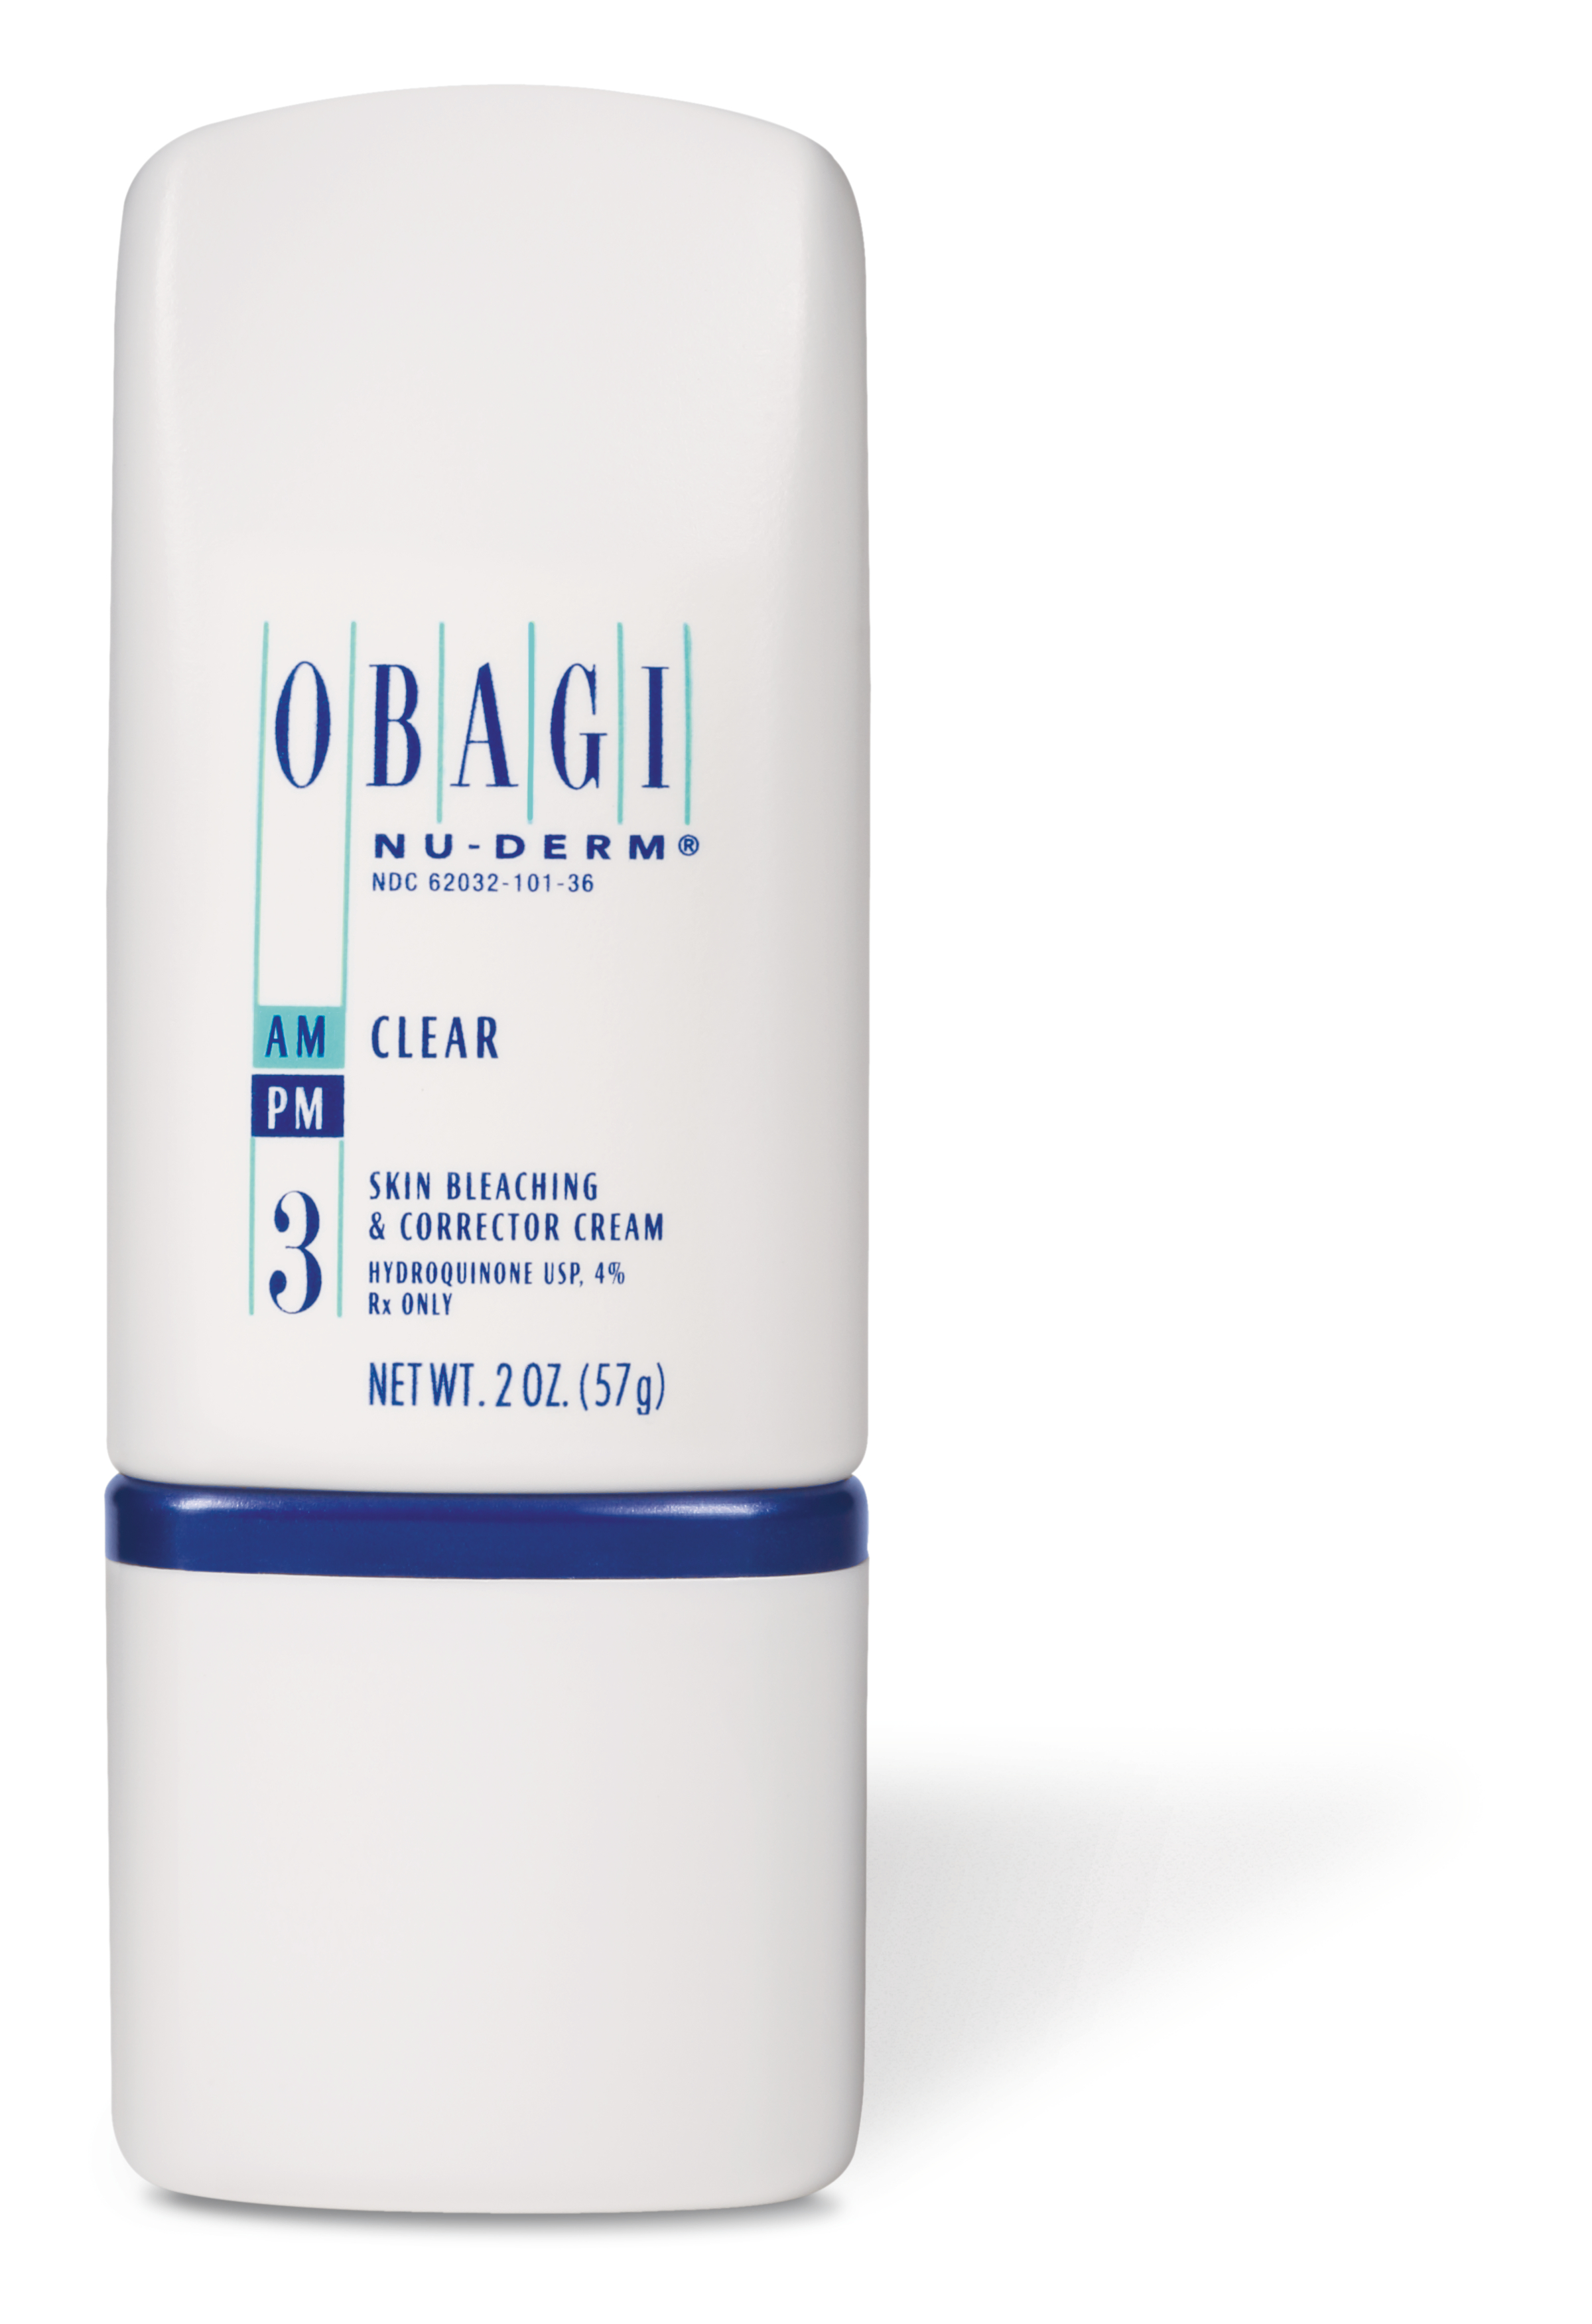 Obagi Nu-Derm skincare product